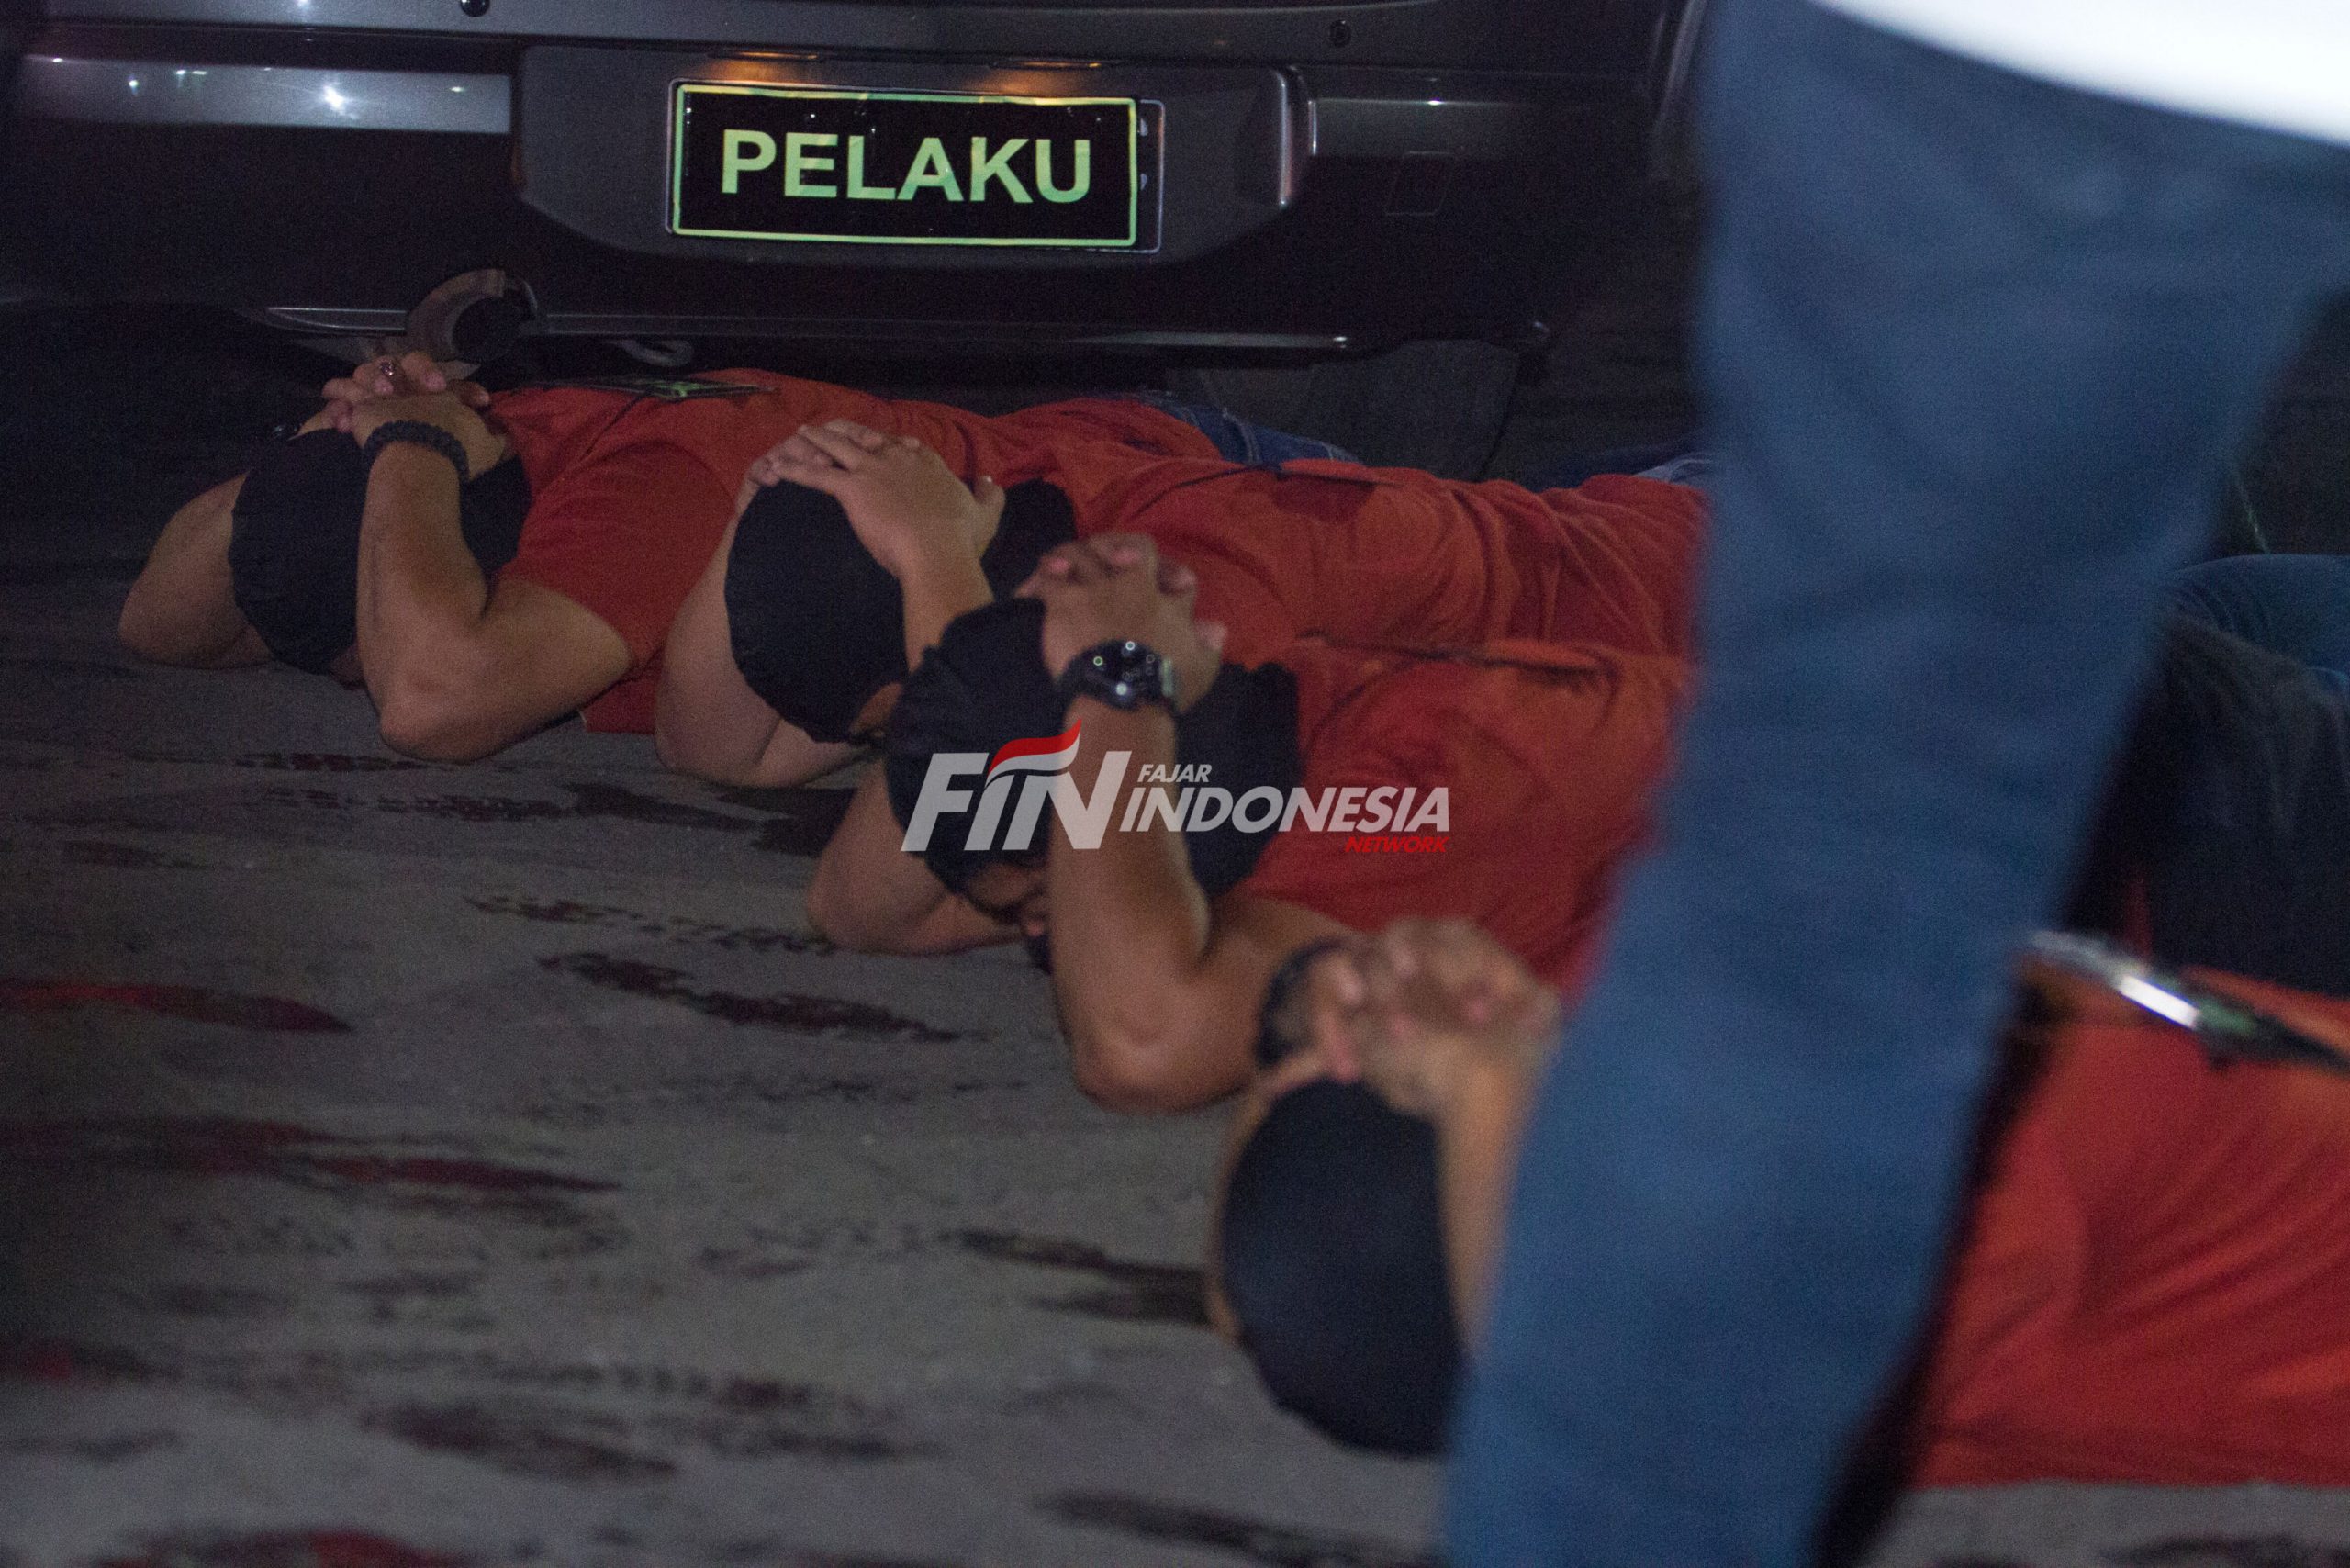 Kasus Unlawful Killing, Jaksa Yakin Briptu Fikri dan Ipda Yusmin Bersalah, Tuntut Hakim Jatuhi Vonis 6 Tahun